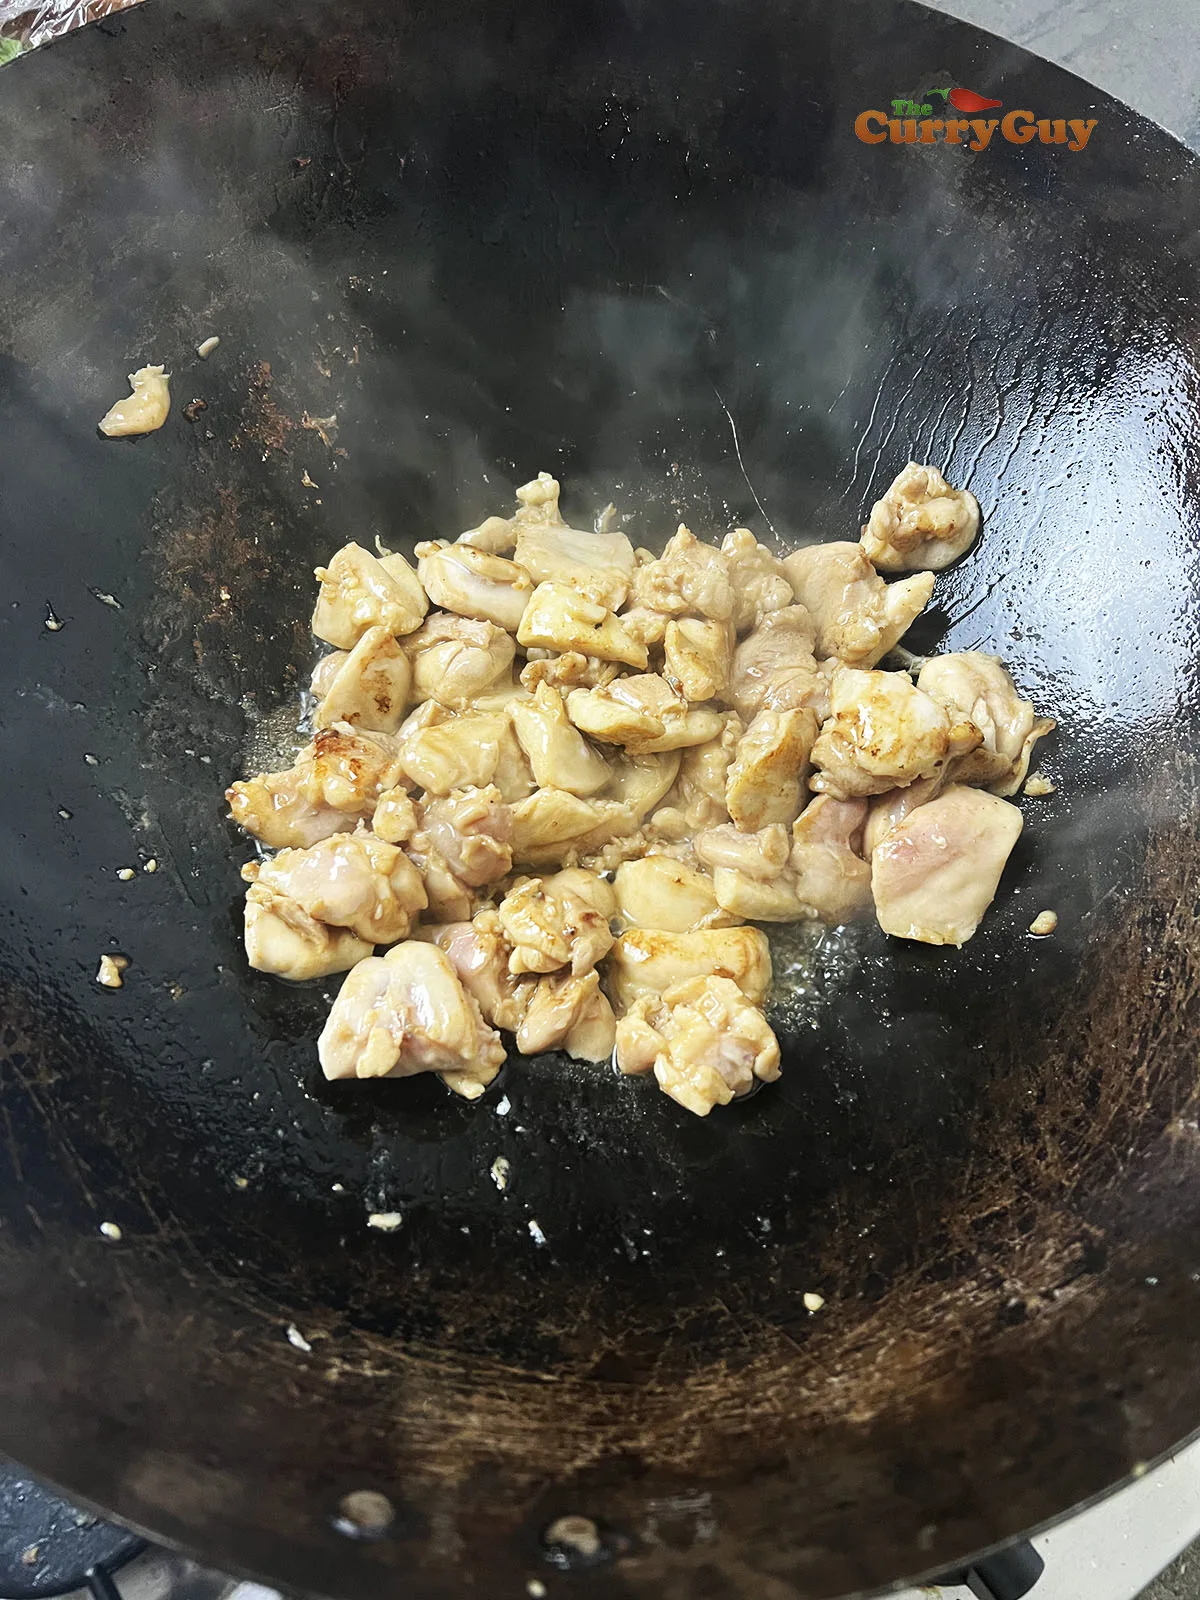 Frying chicken in a wok